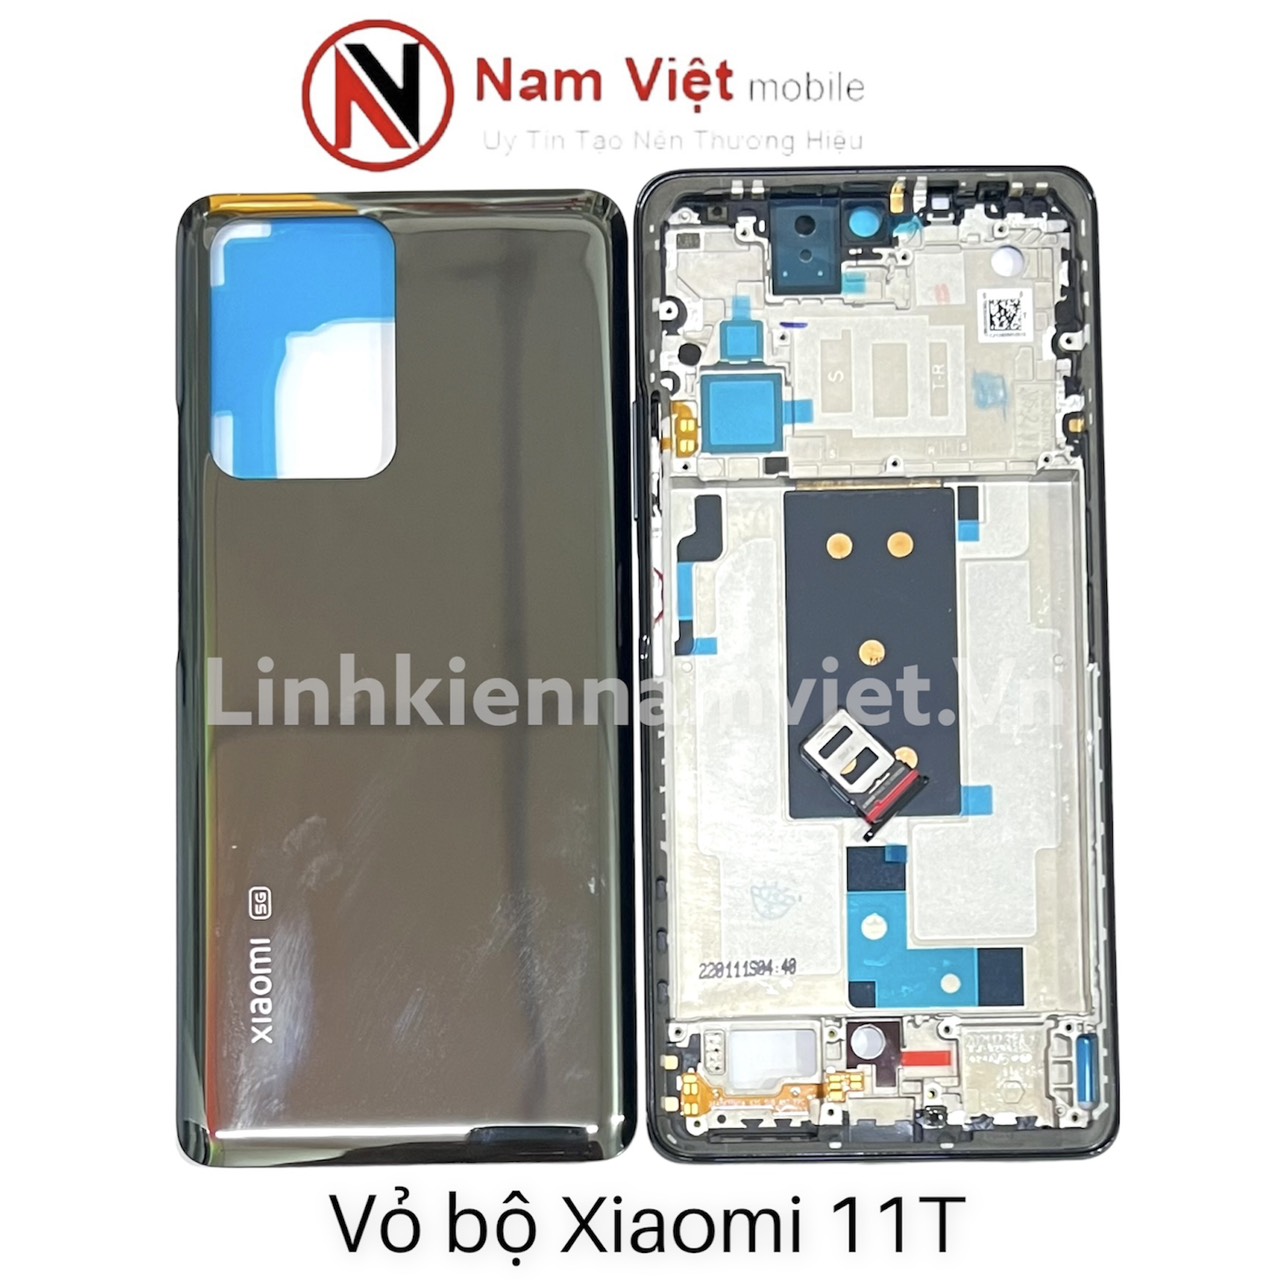 Vo-bo-Xiaomi-11t